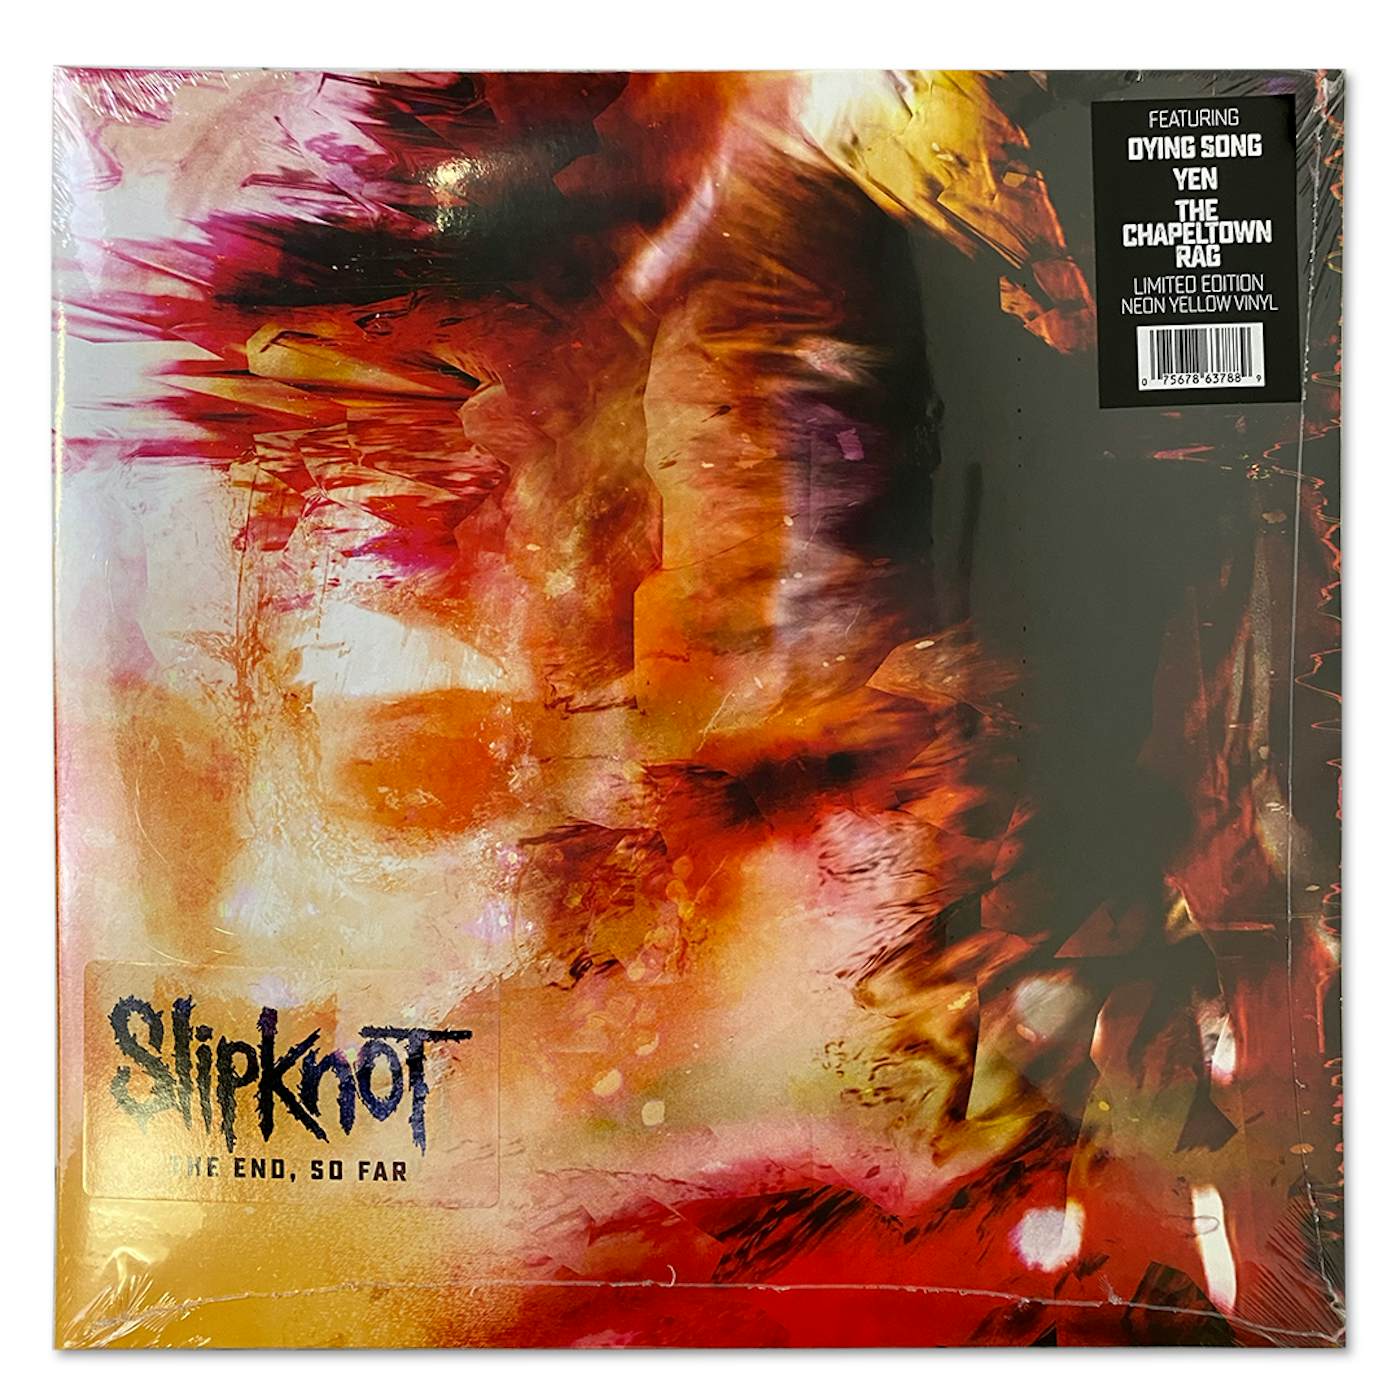 Slipknot "The End, So Far" Album Vinyl